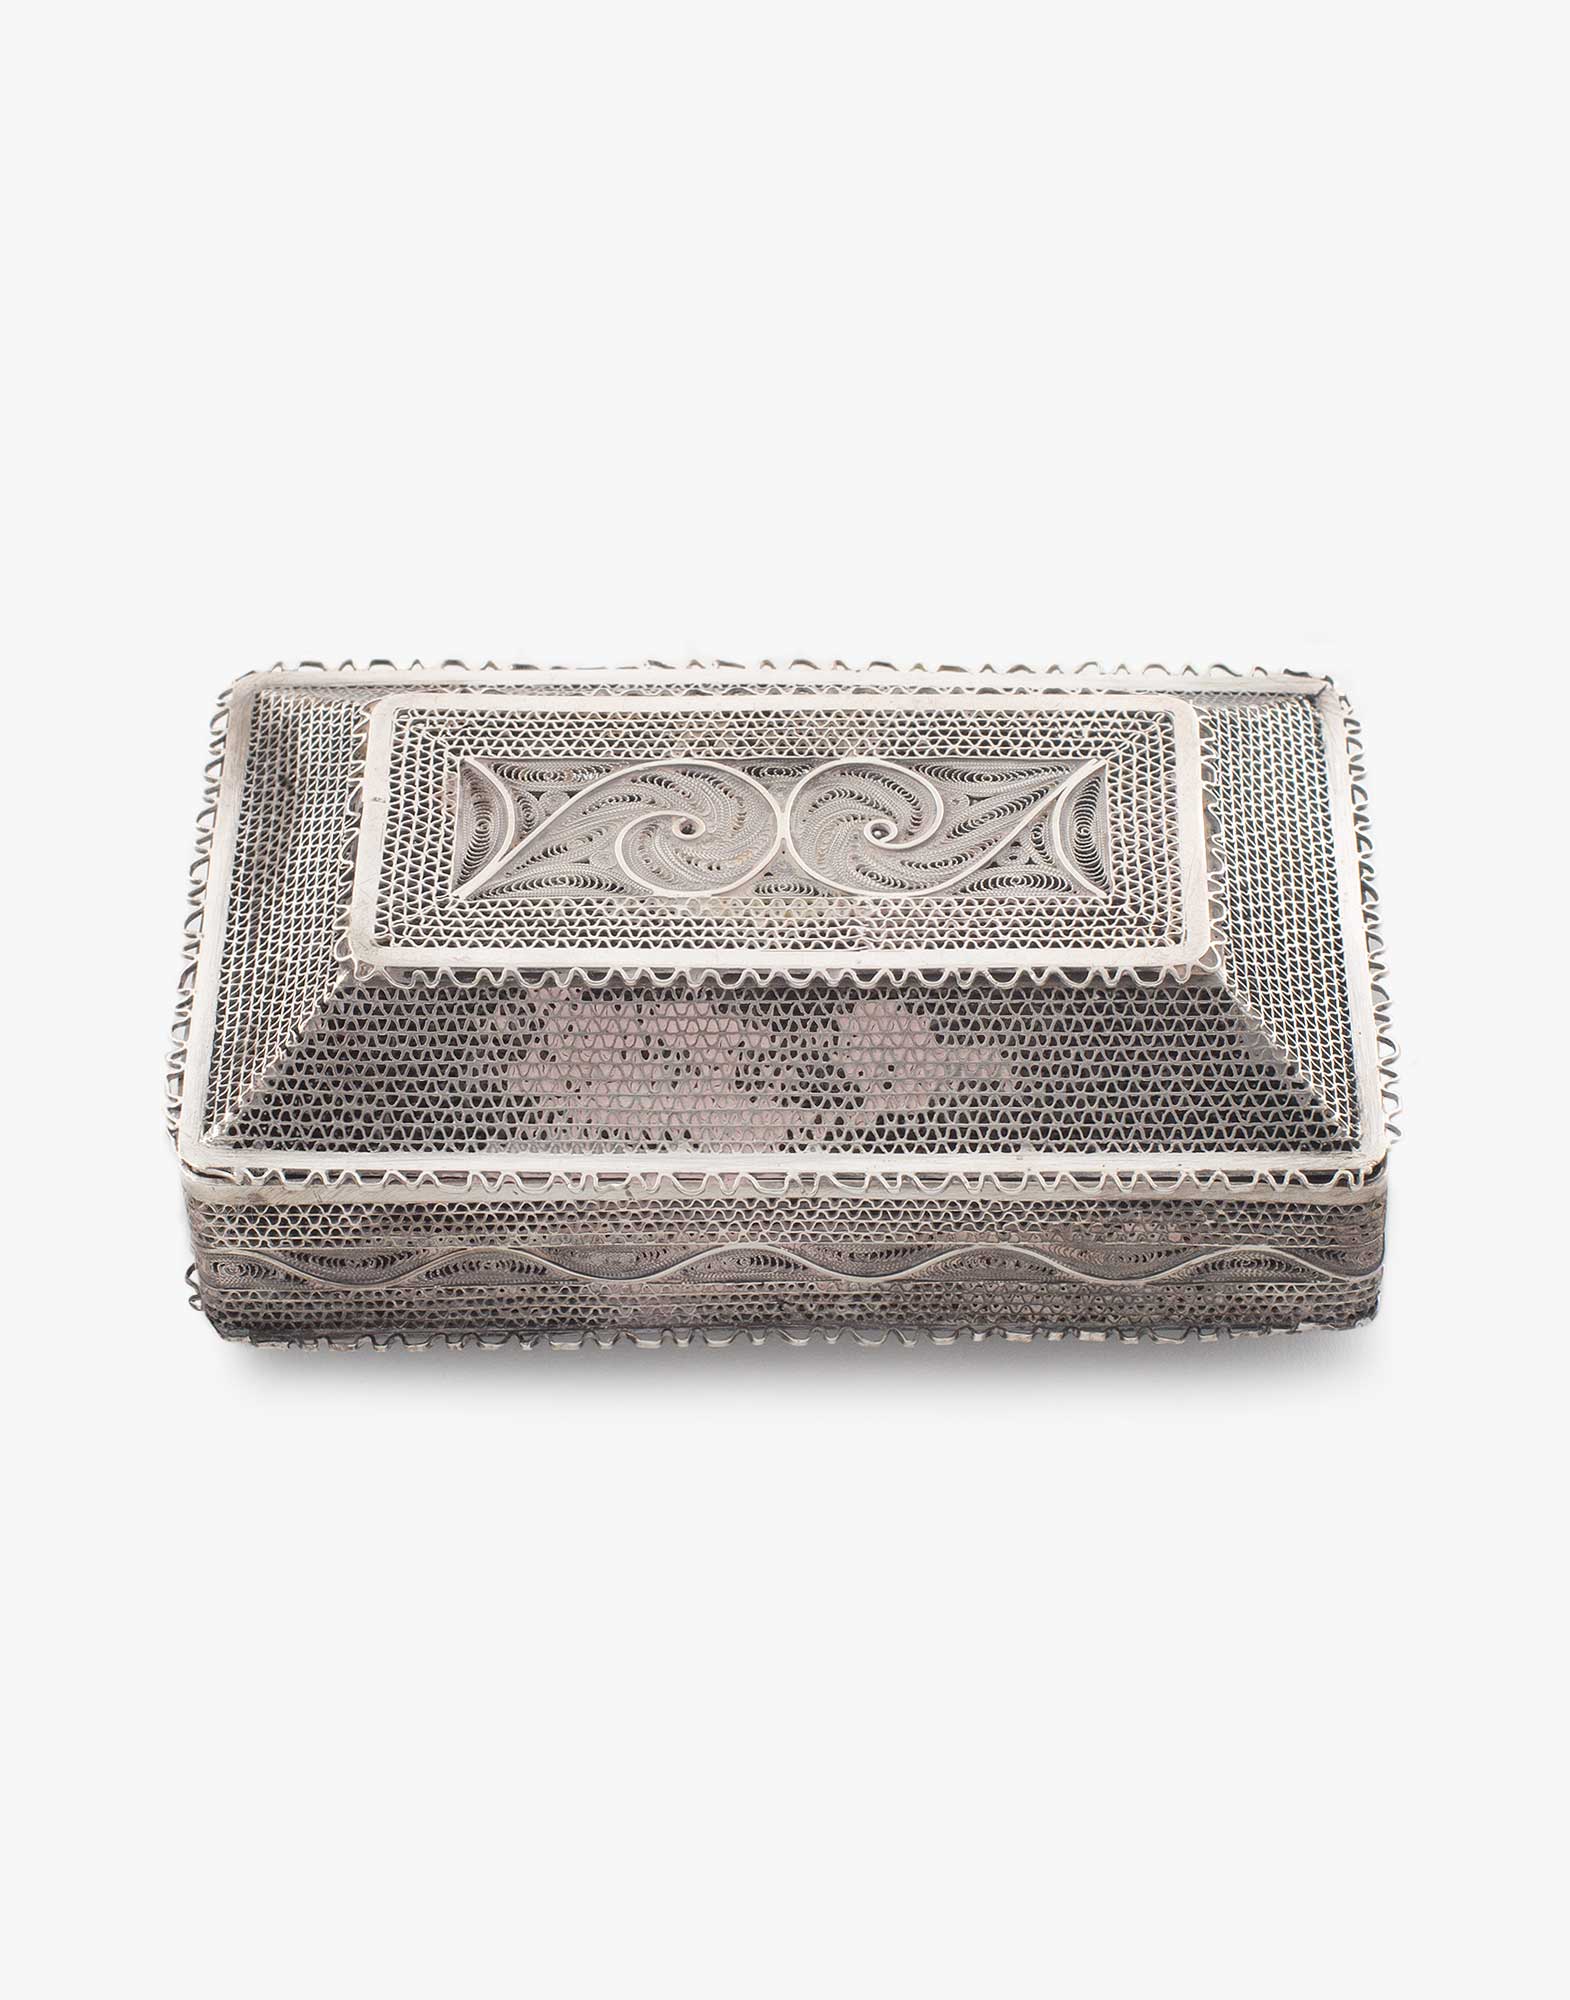 Traditional Silver Cigarette Box